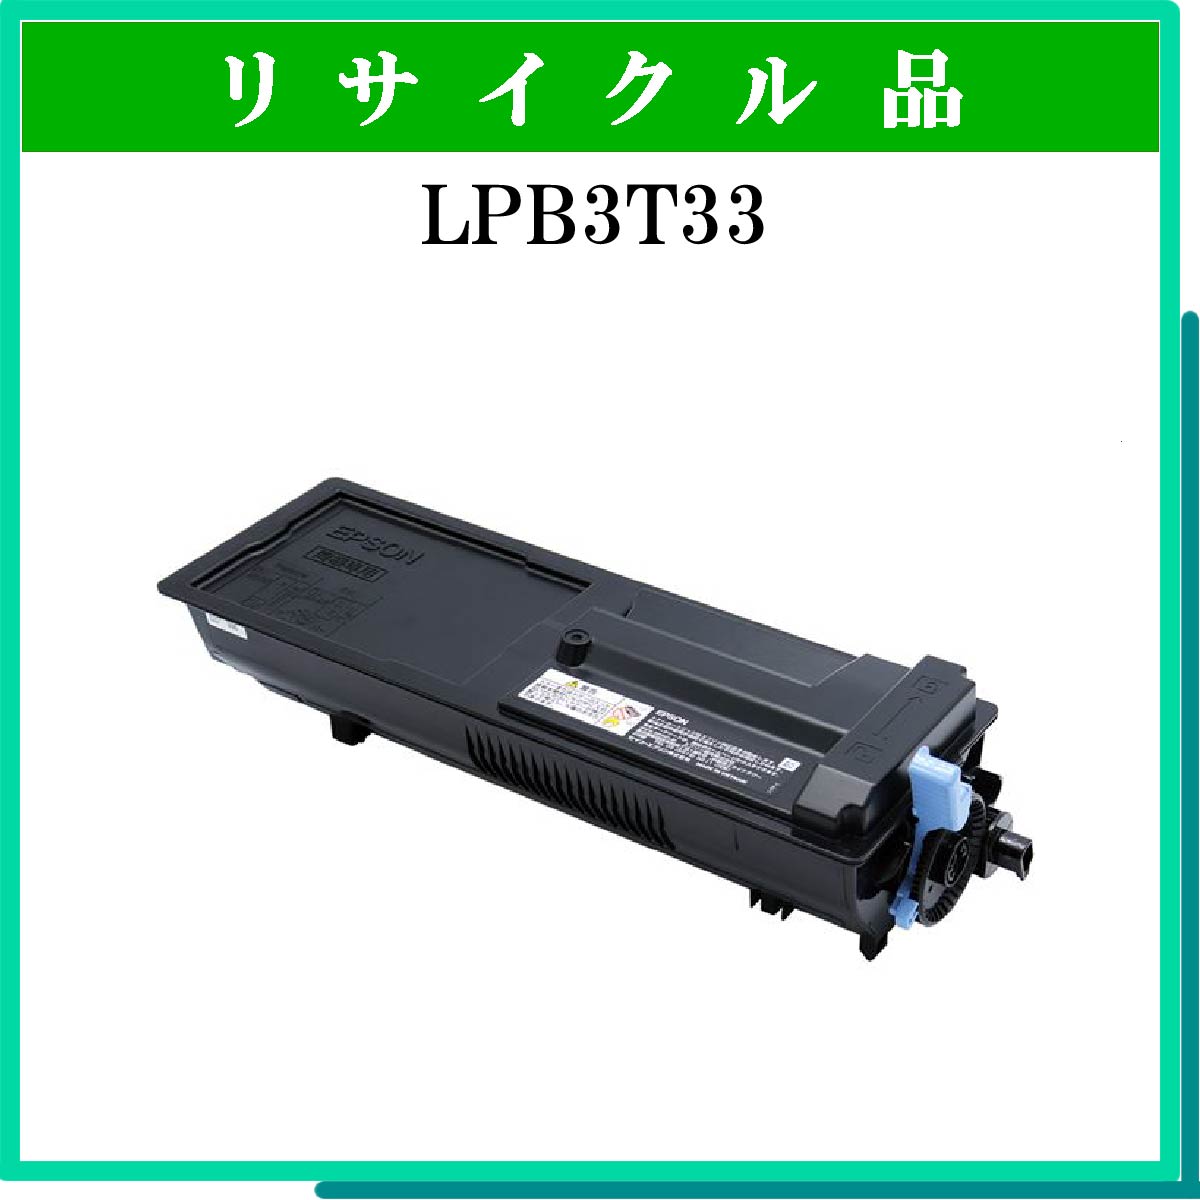 LPB3T33